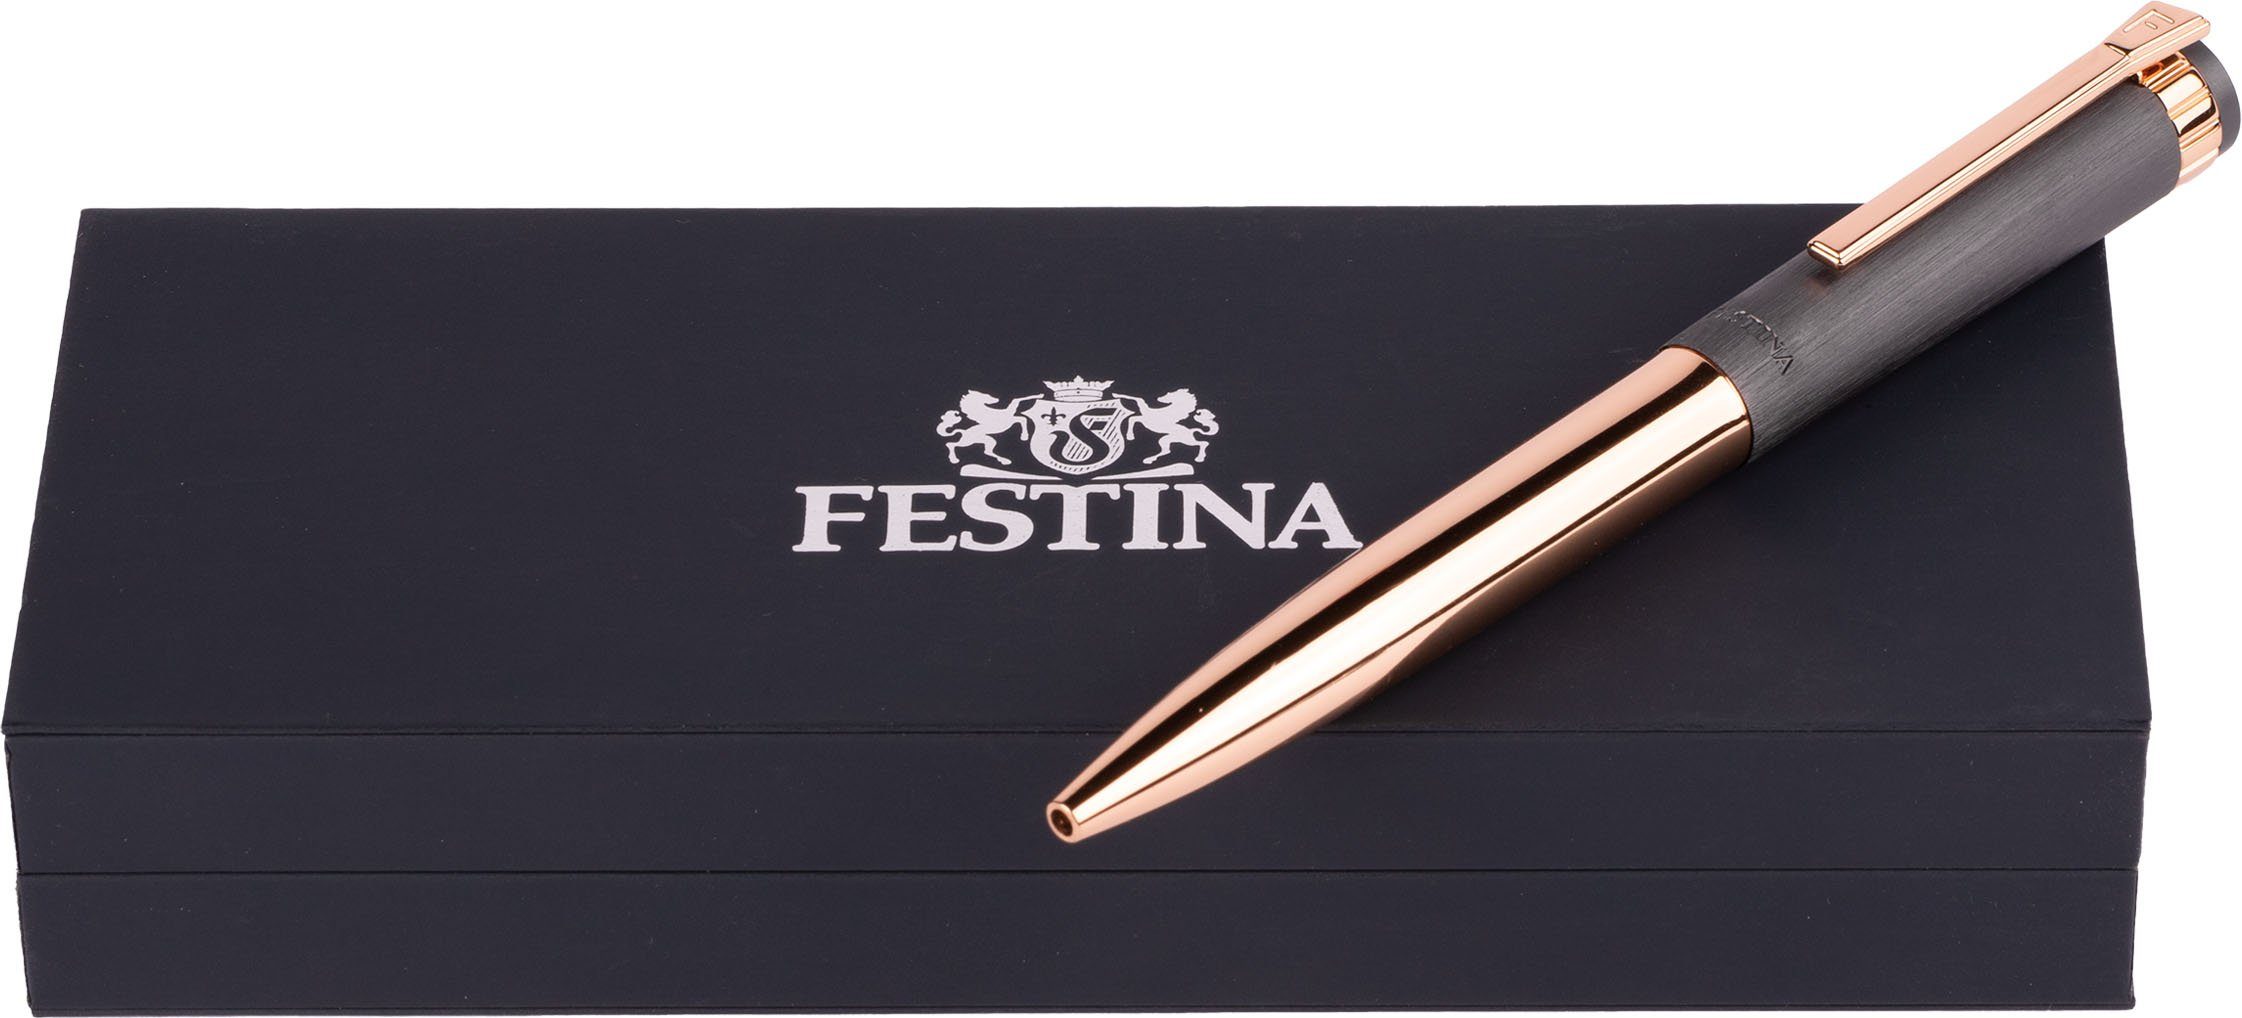 Prestige, Kugelschreiber Etui, Festina als Geschenk ideal inklusive auch FWS4107/D,